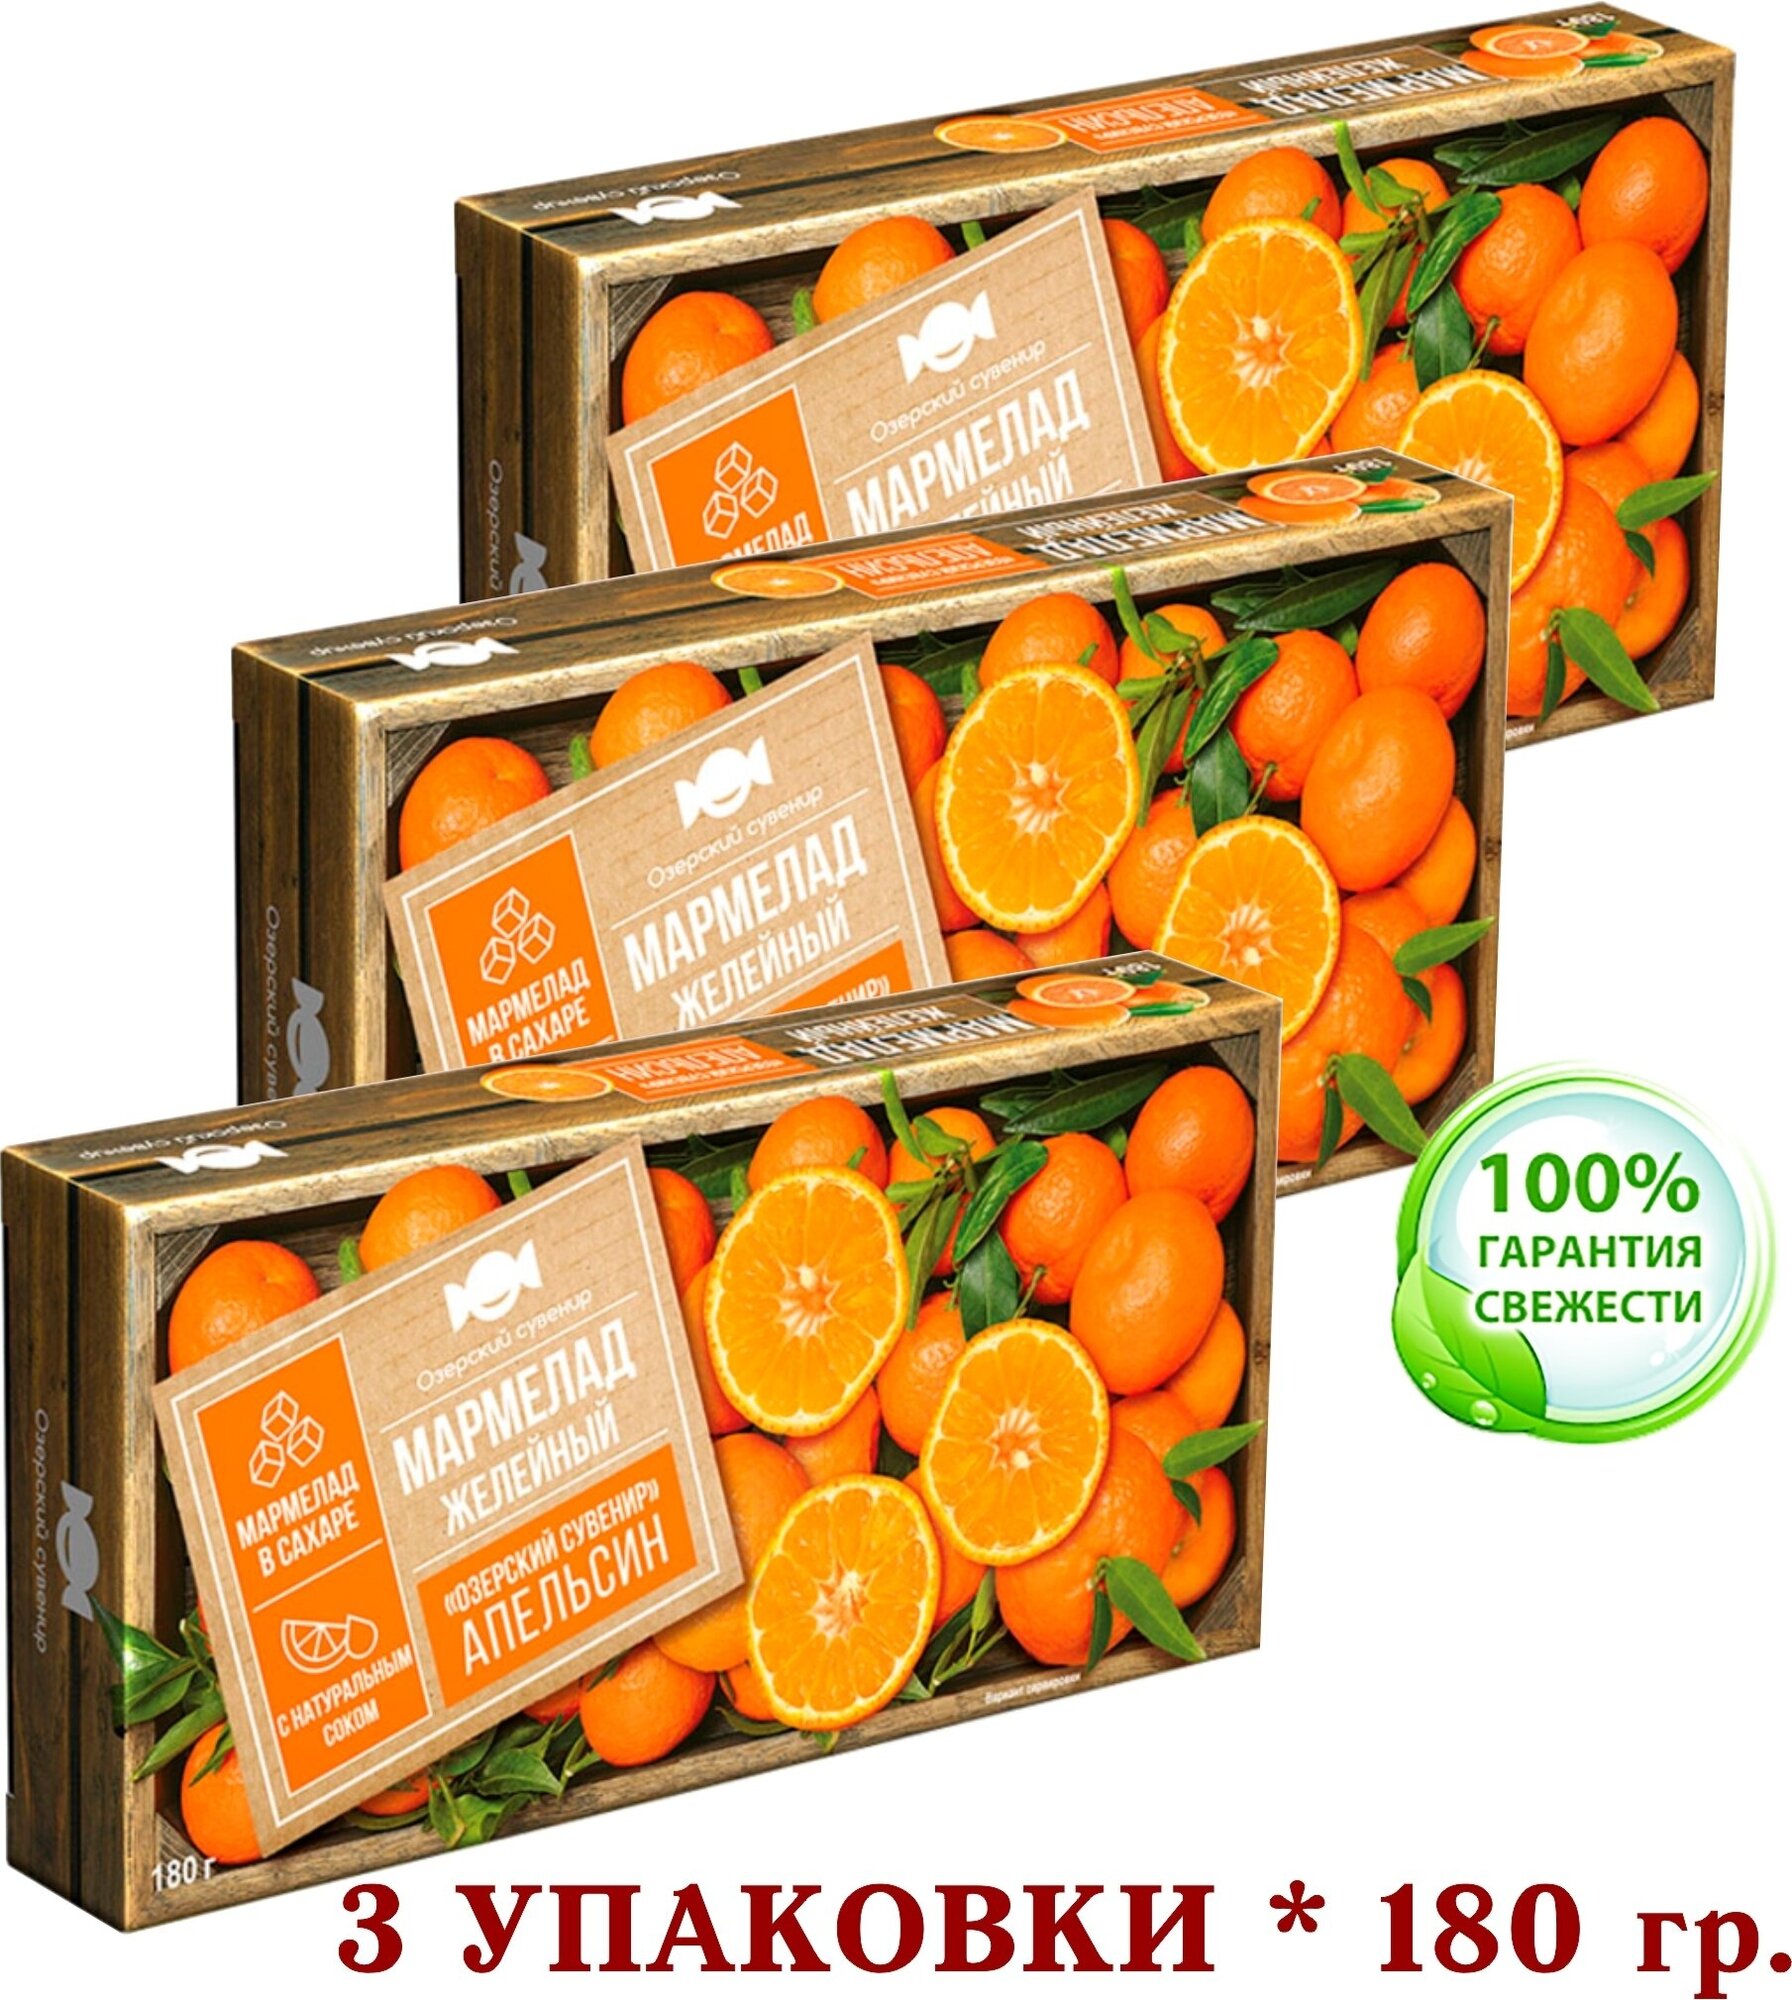 Мармелад натуральный "апельсин", желейные кубики на агаре "озерский сувенир" постный 180 гр. * 3 упаковки.